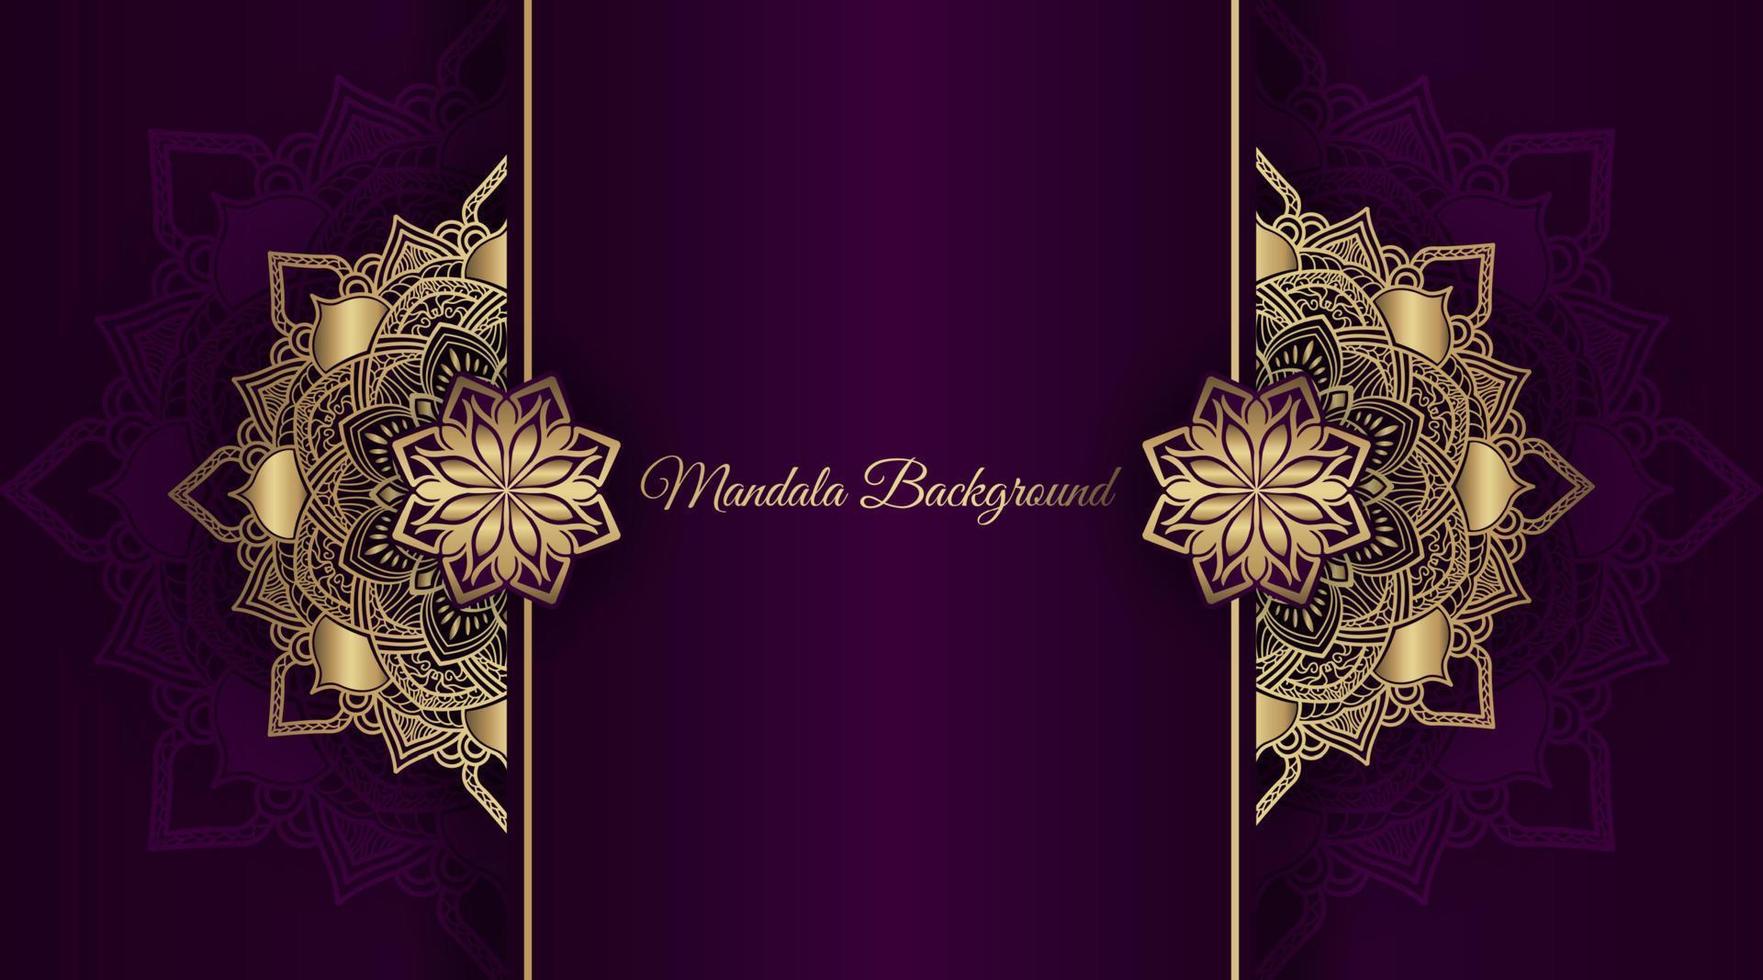 fond de luxe violet avec ornement de mandala vecteur